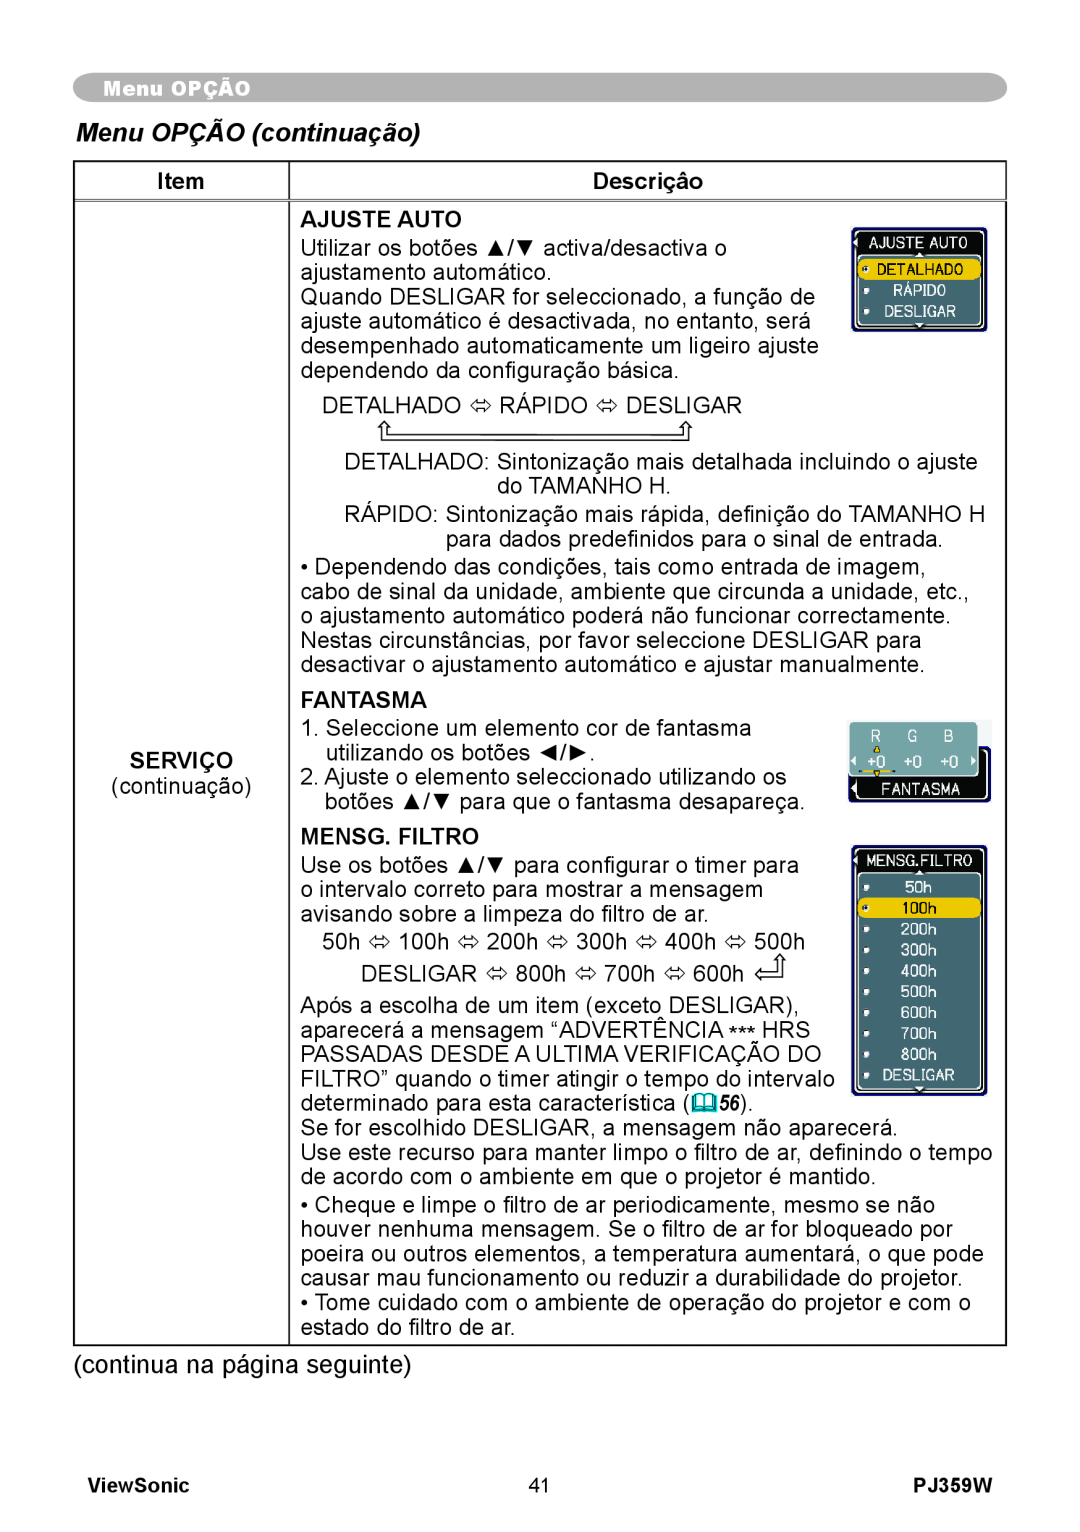 ViewSonic PJ359 manual Menu OPÇÃO continuação, Descriçâo, Ajuste Auto, Fantasma, Serviço, Mensg. Filtro 